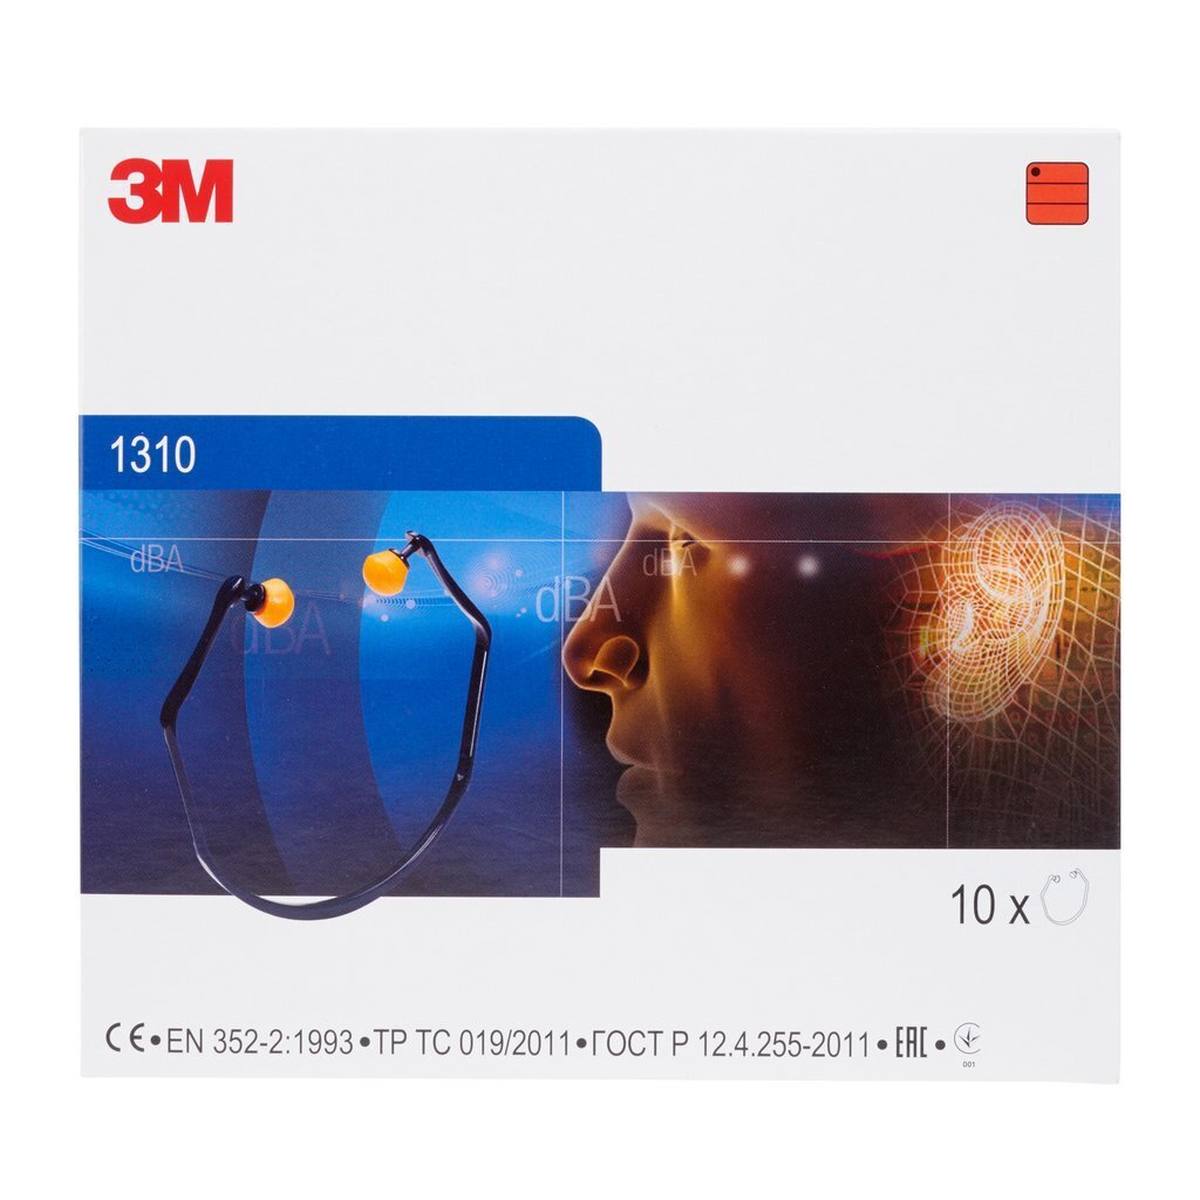 3M 1310 Bügelgehörschützer, besonders komfortabel durch elastisches Bügelkonzept, SNR = 26 dB